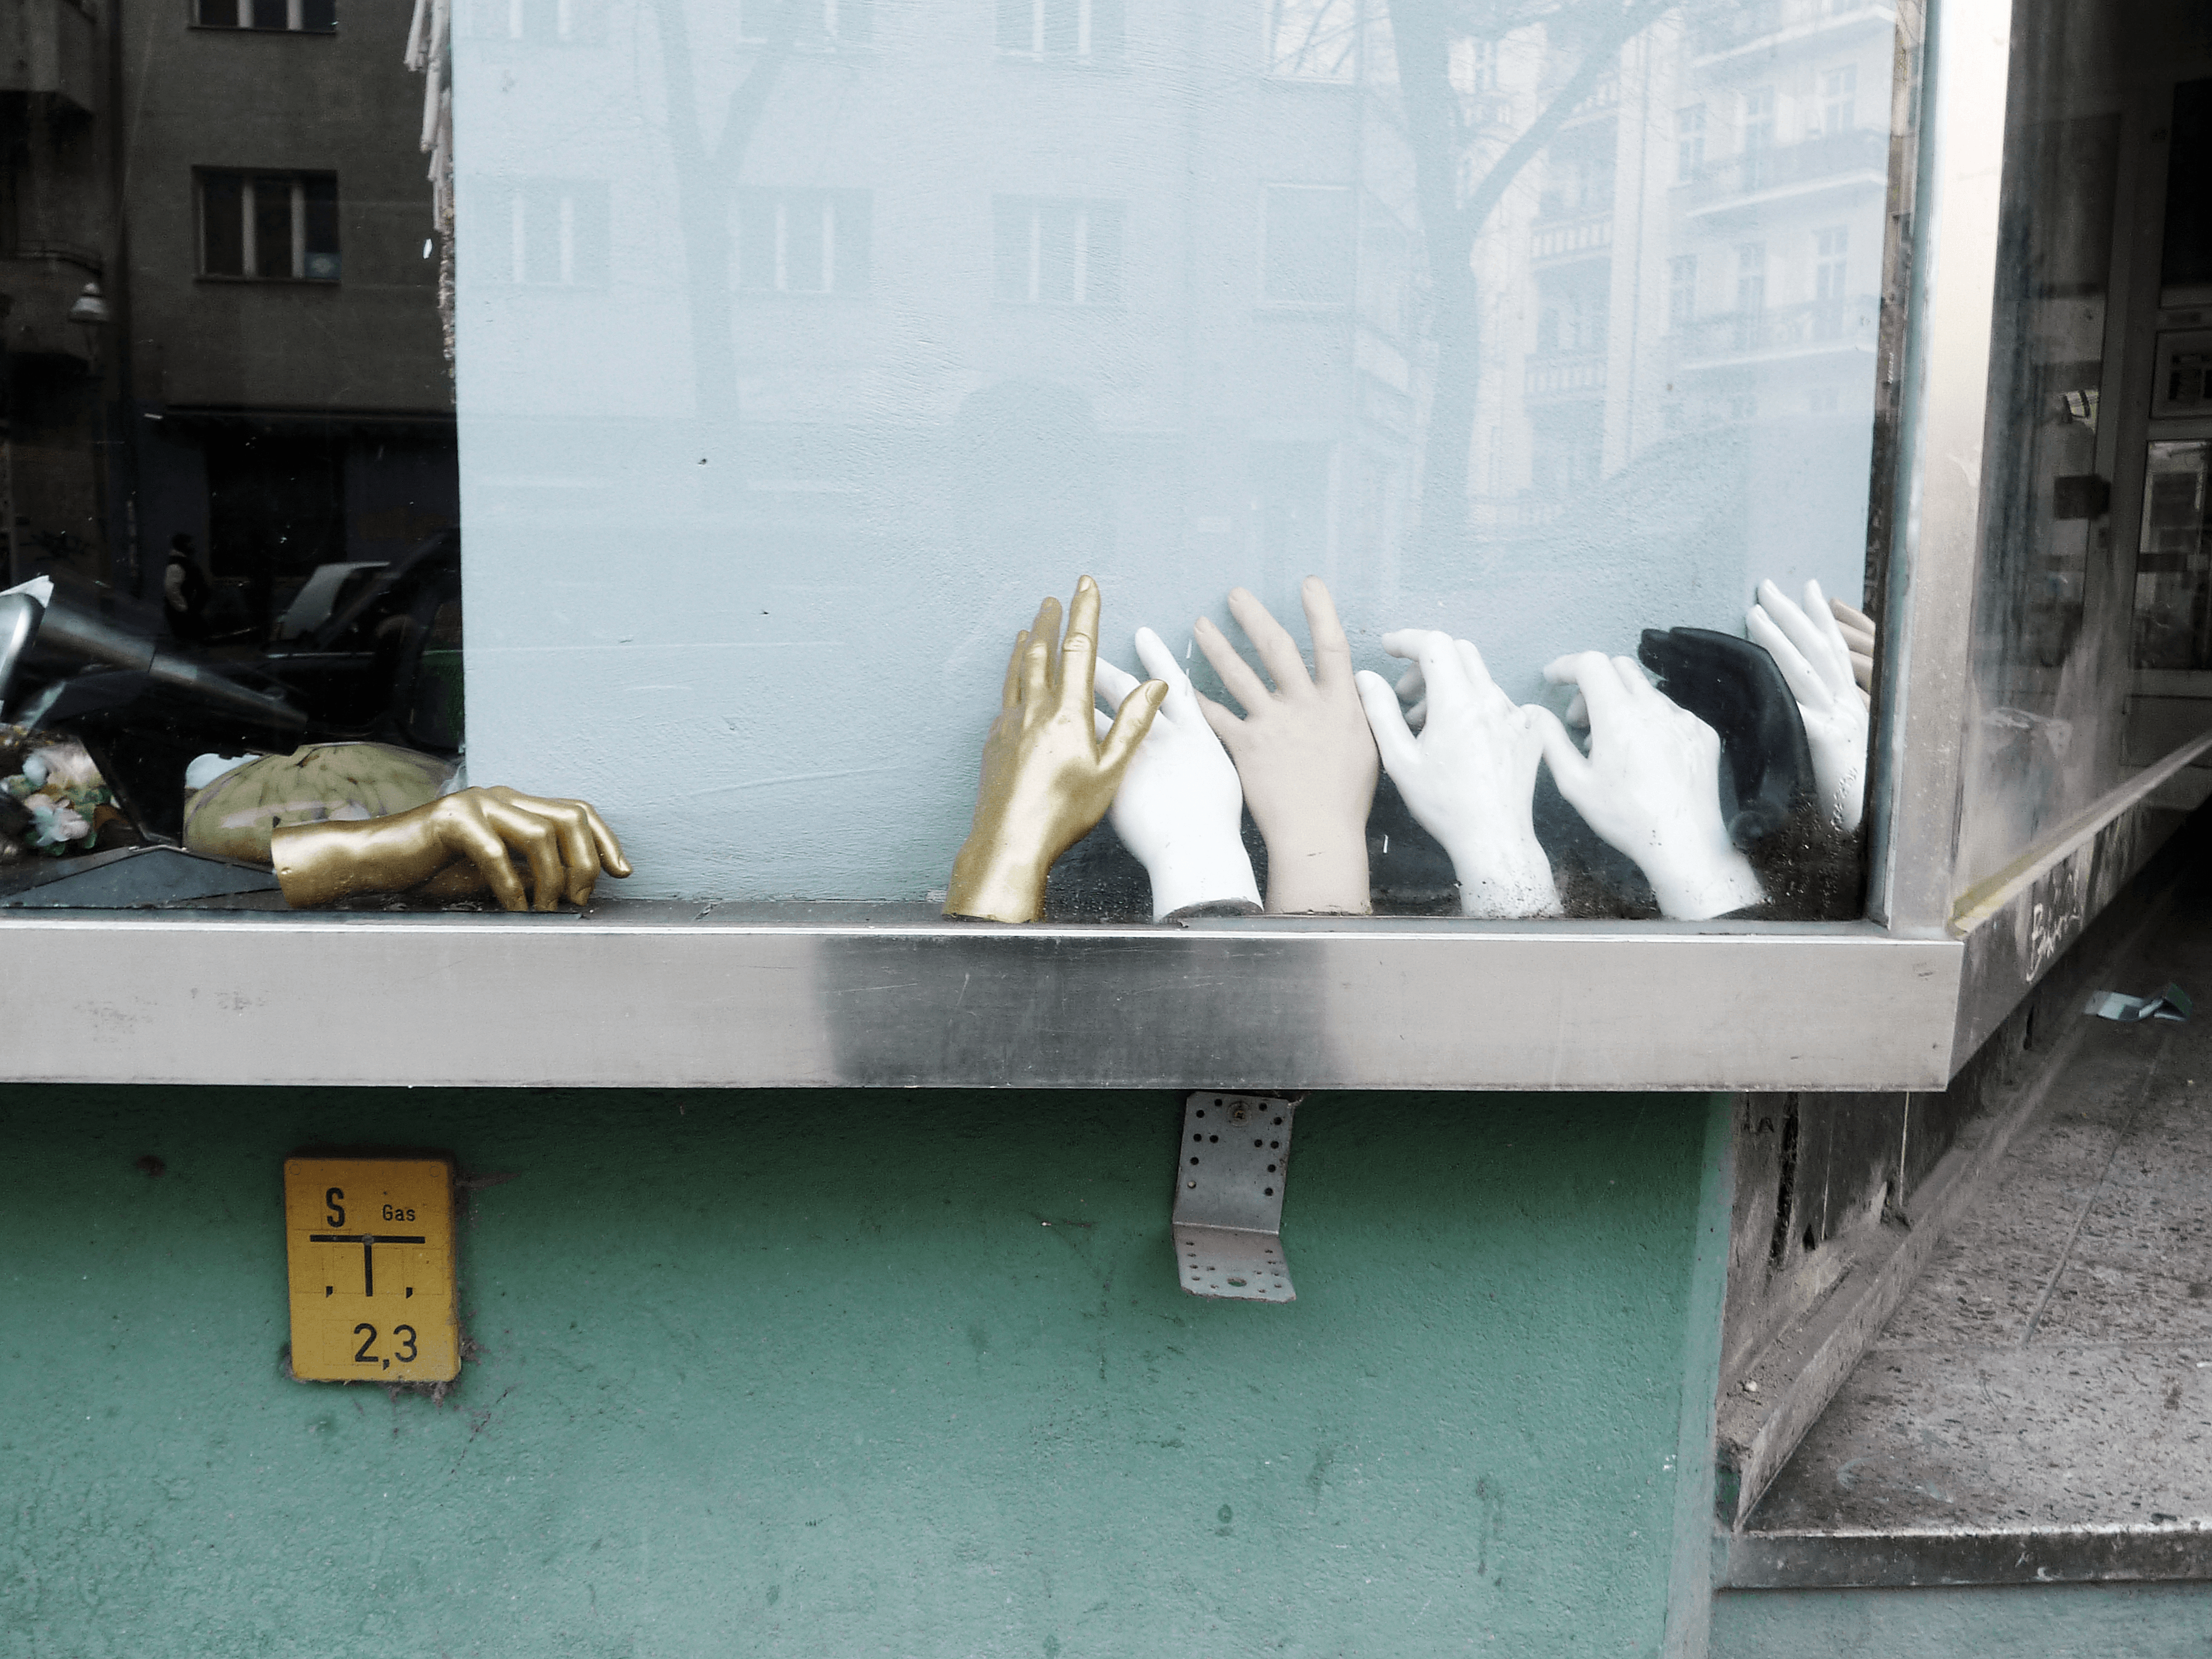 Trash Aesthetics by Yelena Myshko